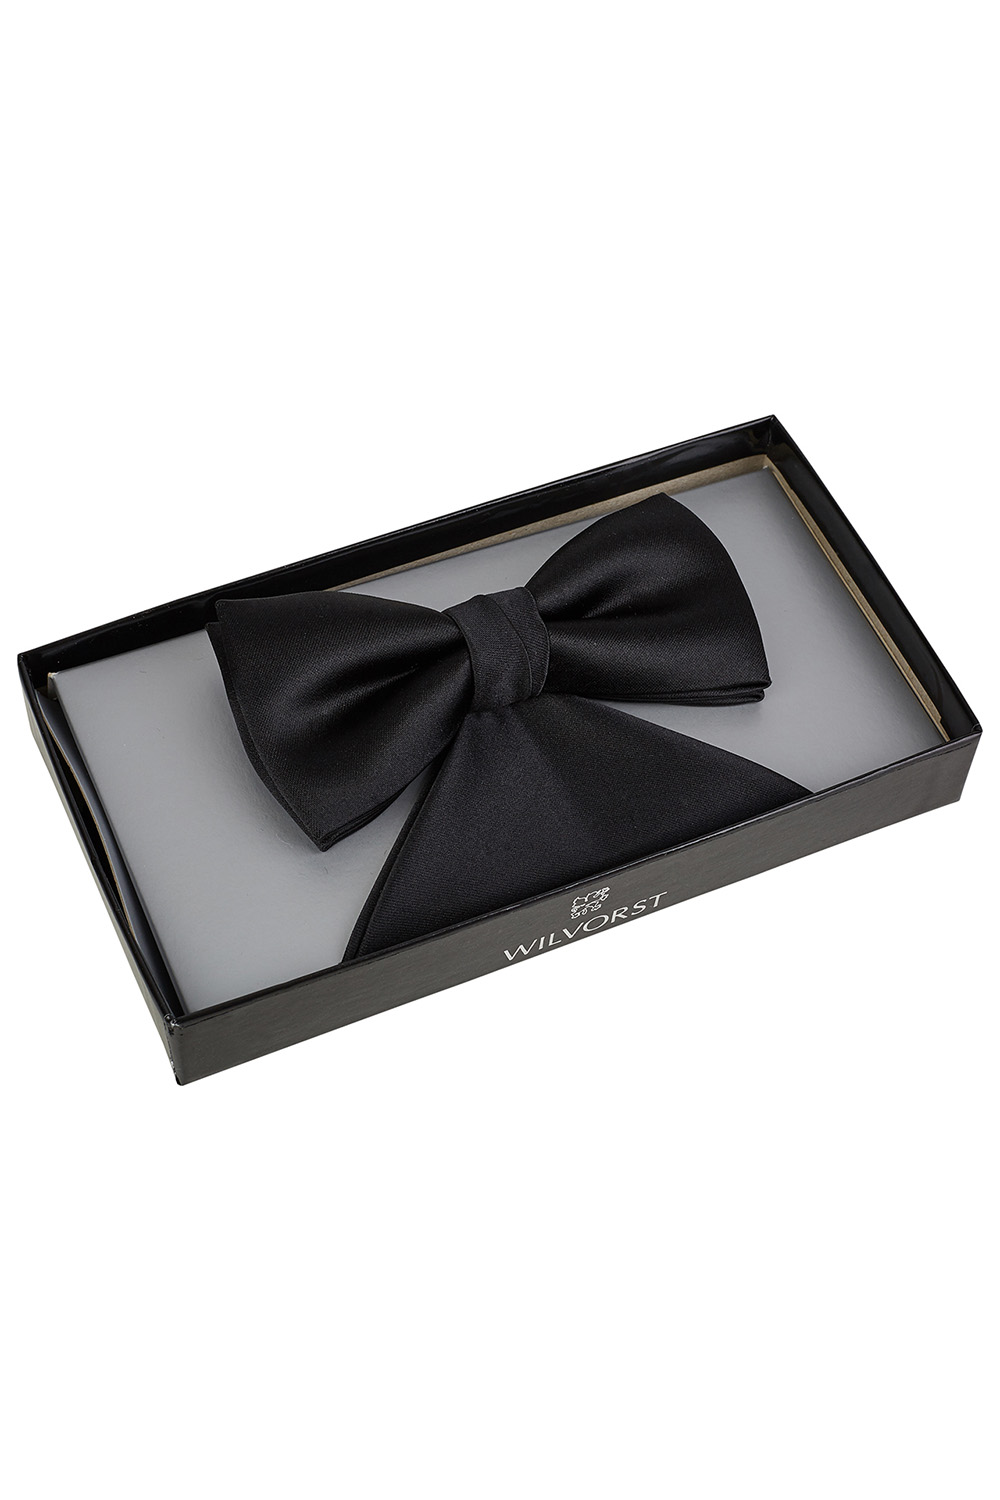 WILVORST fekete csokornyakkendő és díszzsebkendő díszdobozban 470150-1 Modell 0424